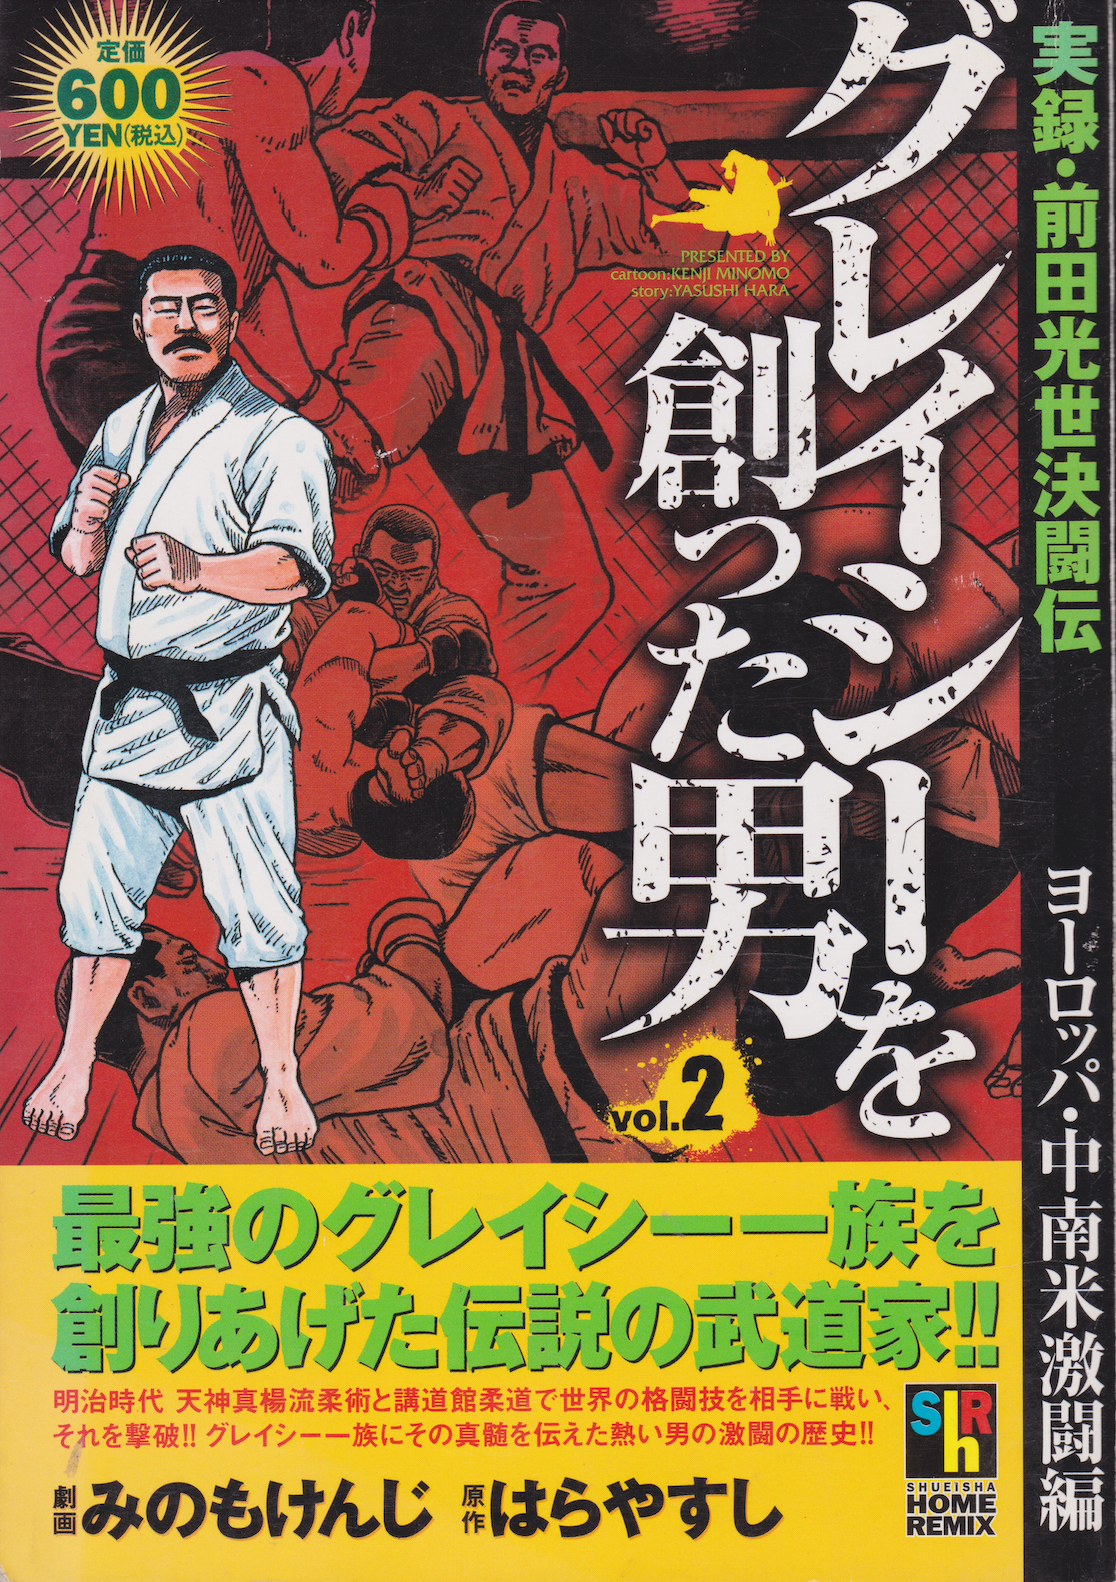 Mitsuyo Maeda: El hombre que creó el libro 2 del manga Gracies (usado)